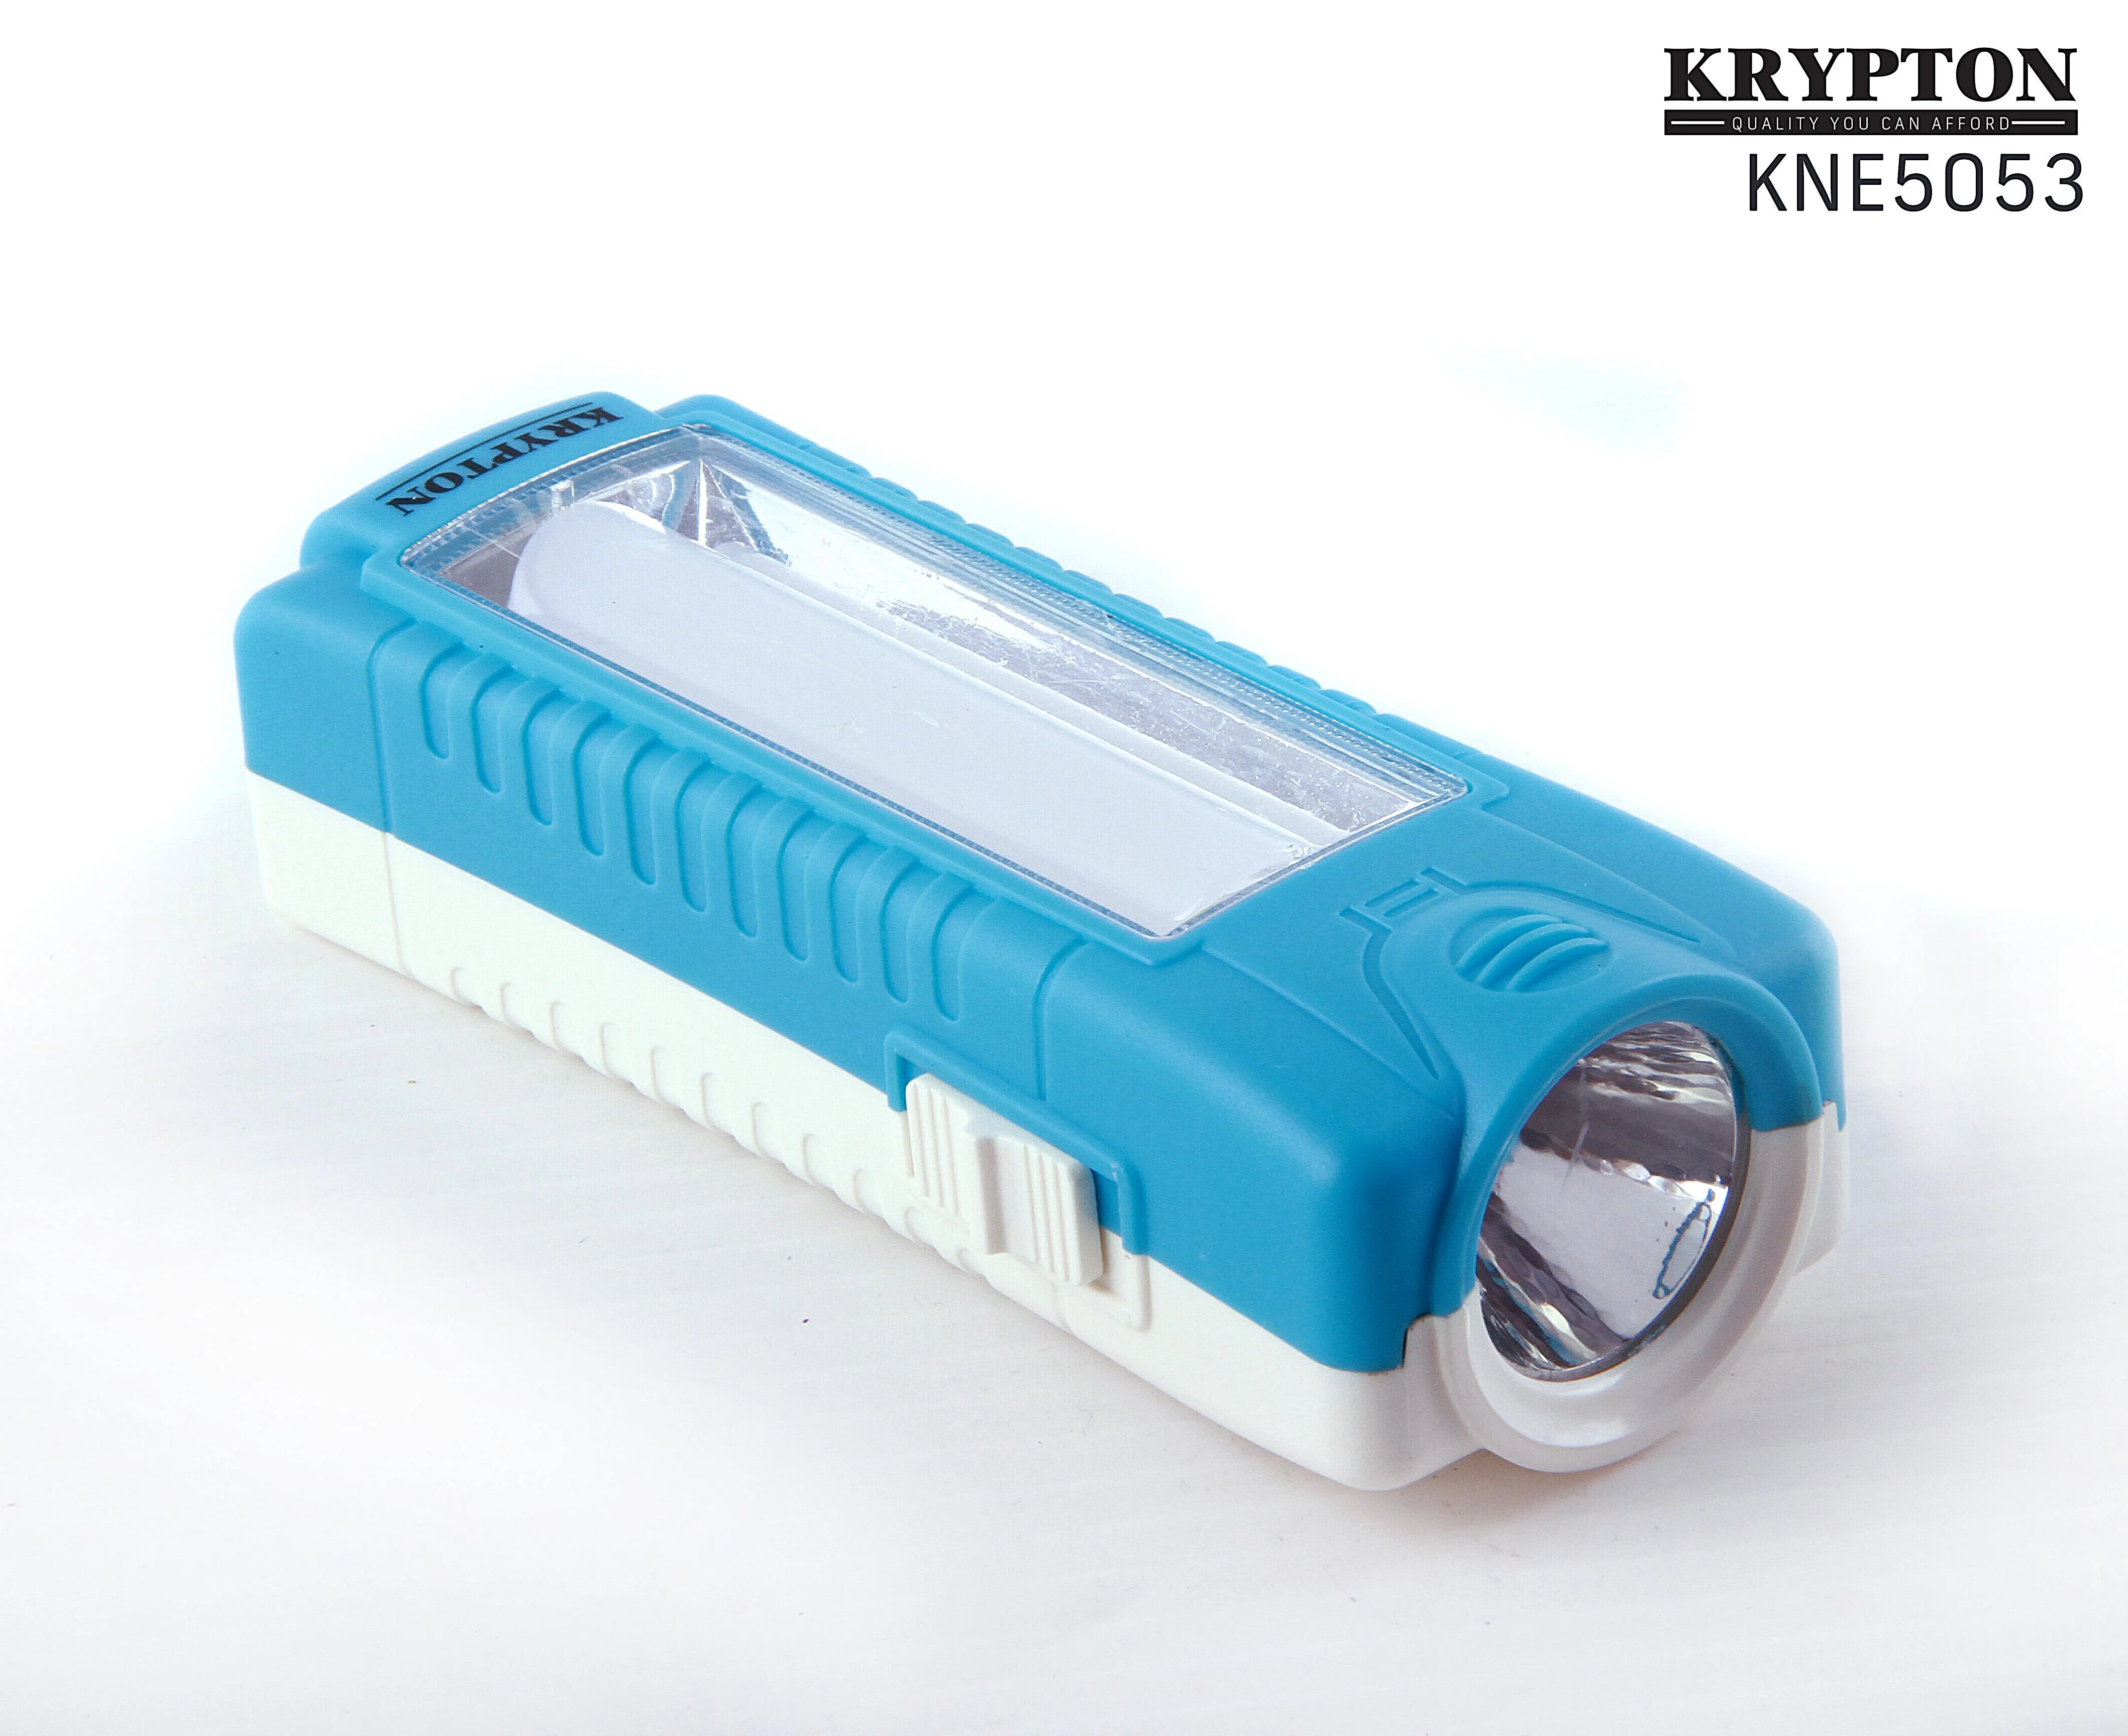 Krypton Emergency Lantern with flashlight